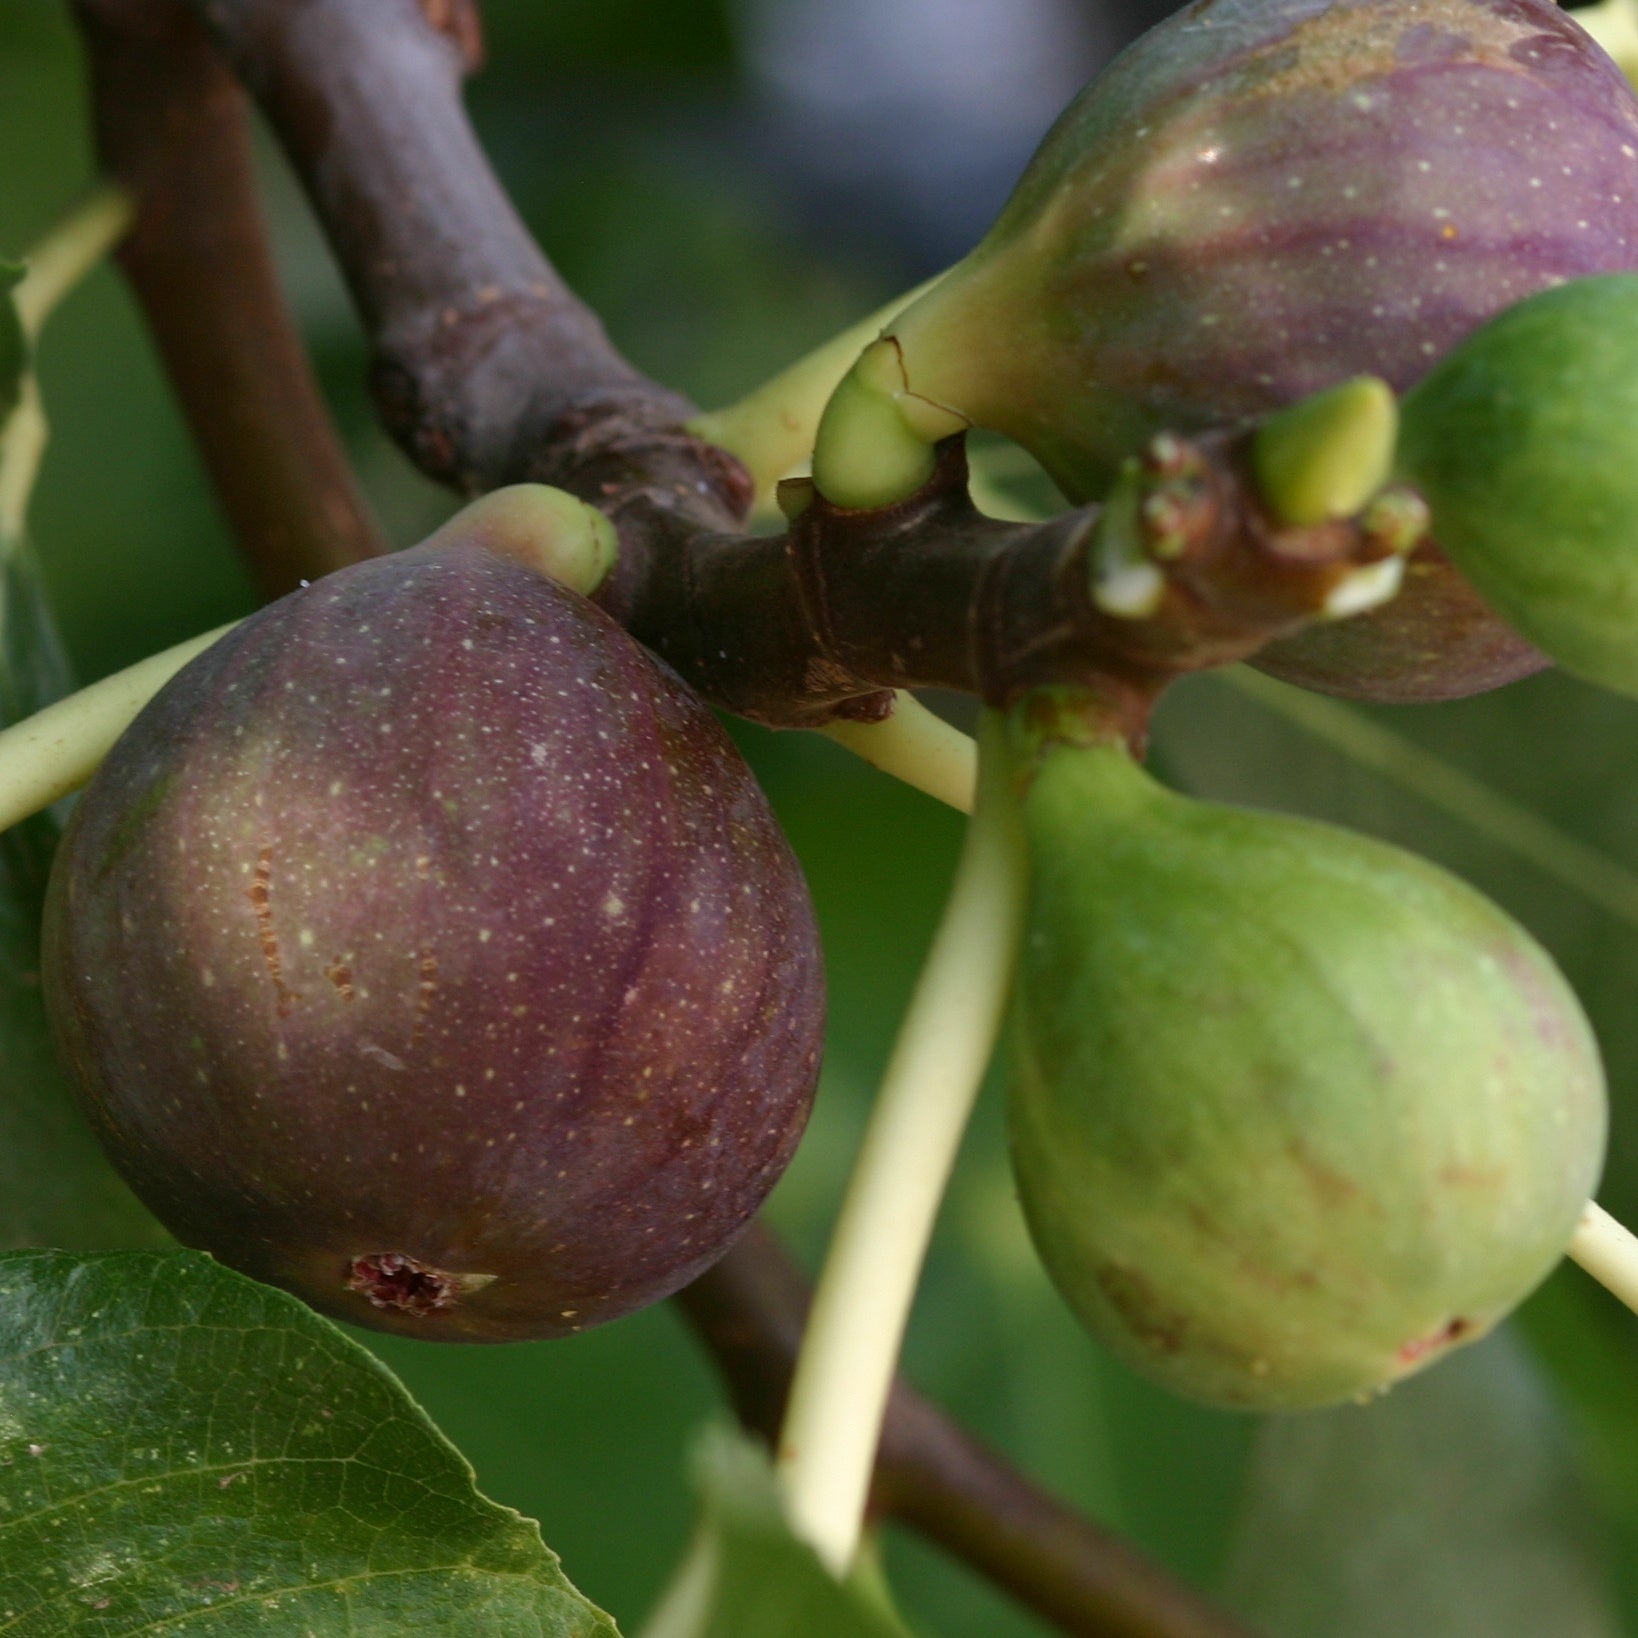 Vijgenboom 'Violette de Solliès' - Ficus carica sollies - Fruit